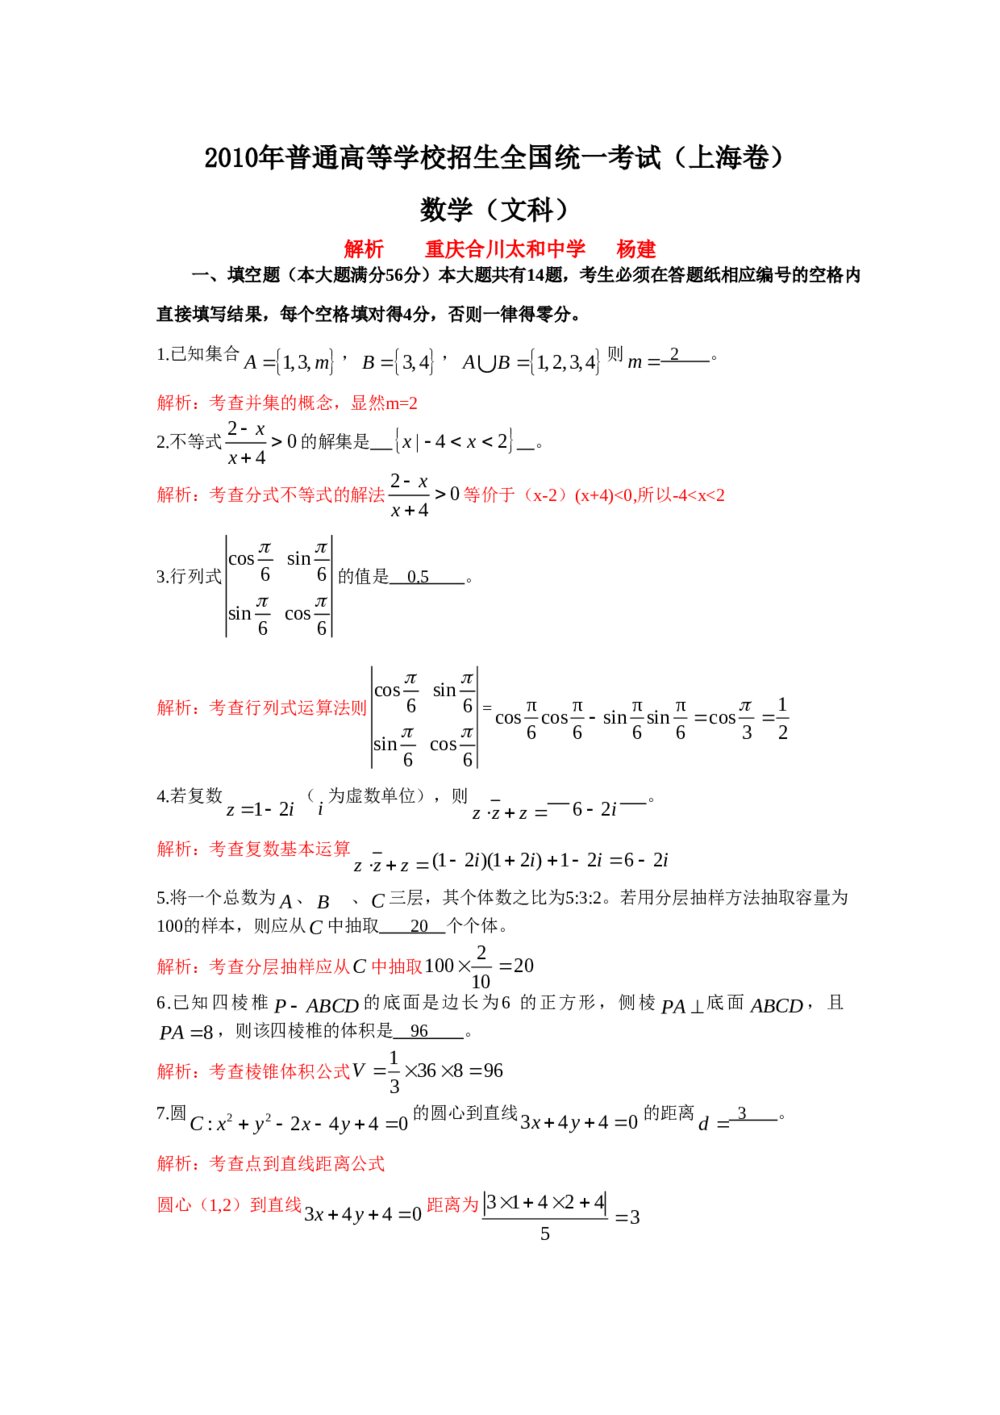 高考试题(上海卷)——文数数学+(答案解析)